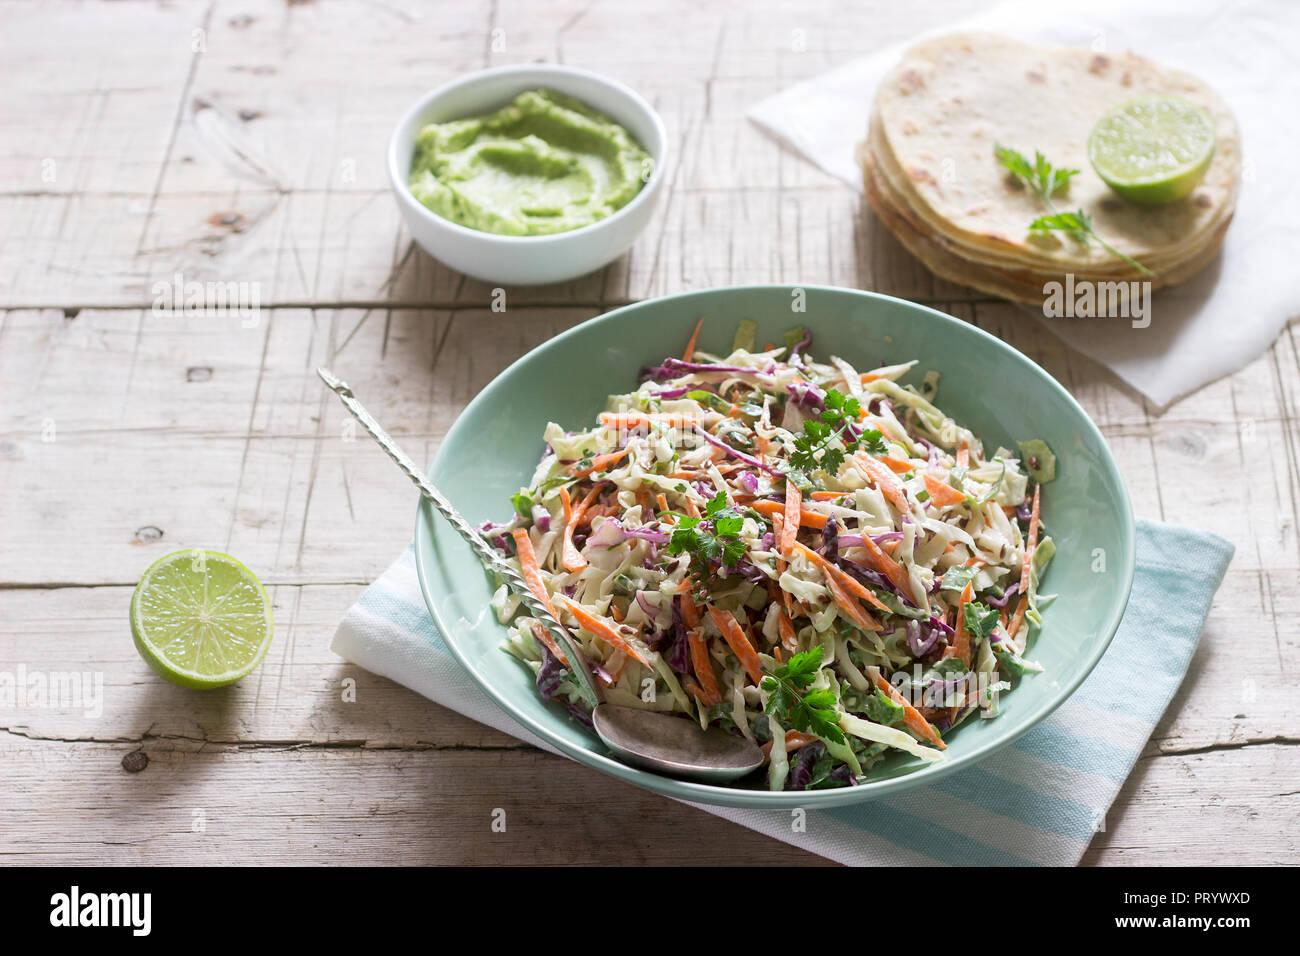 Fait à partir de chou choux, carottes et diverses herbes, servi avec des tortillas et guacamala sur un fond de bois. Banque D'Images